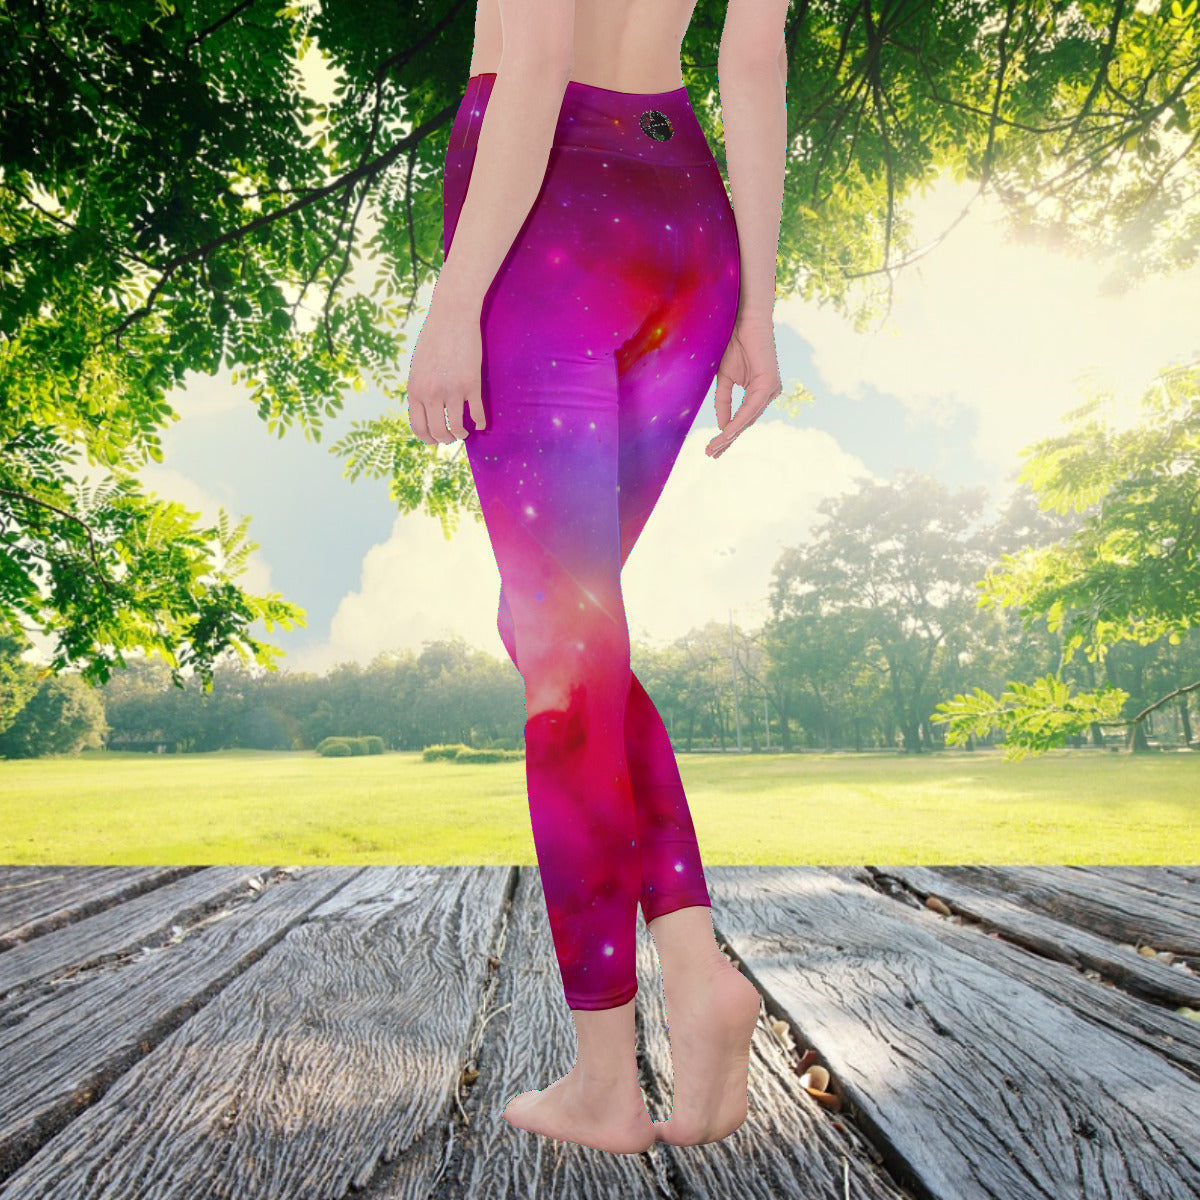 Red Nebula Galaxy Space Women's Fashion Leggings The Nebula Palace: Spiritually Cosmic Fashion